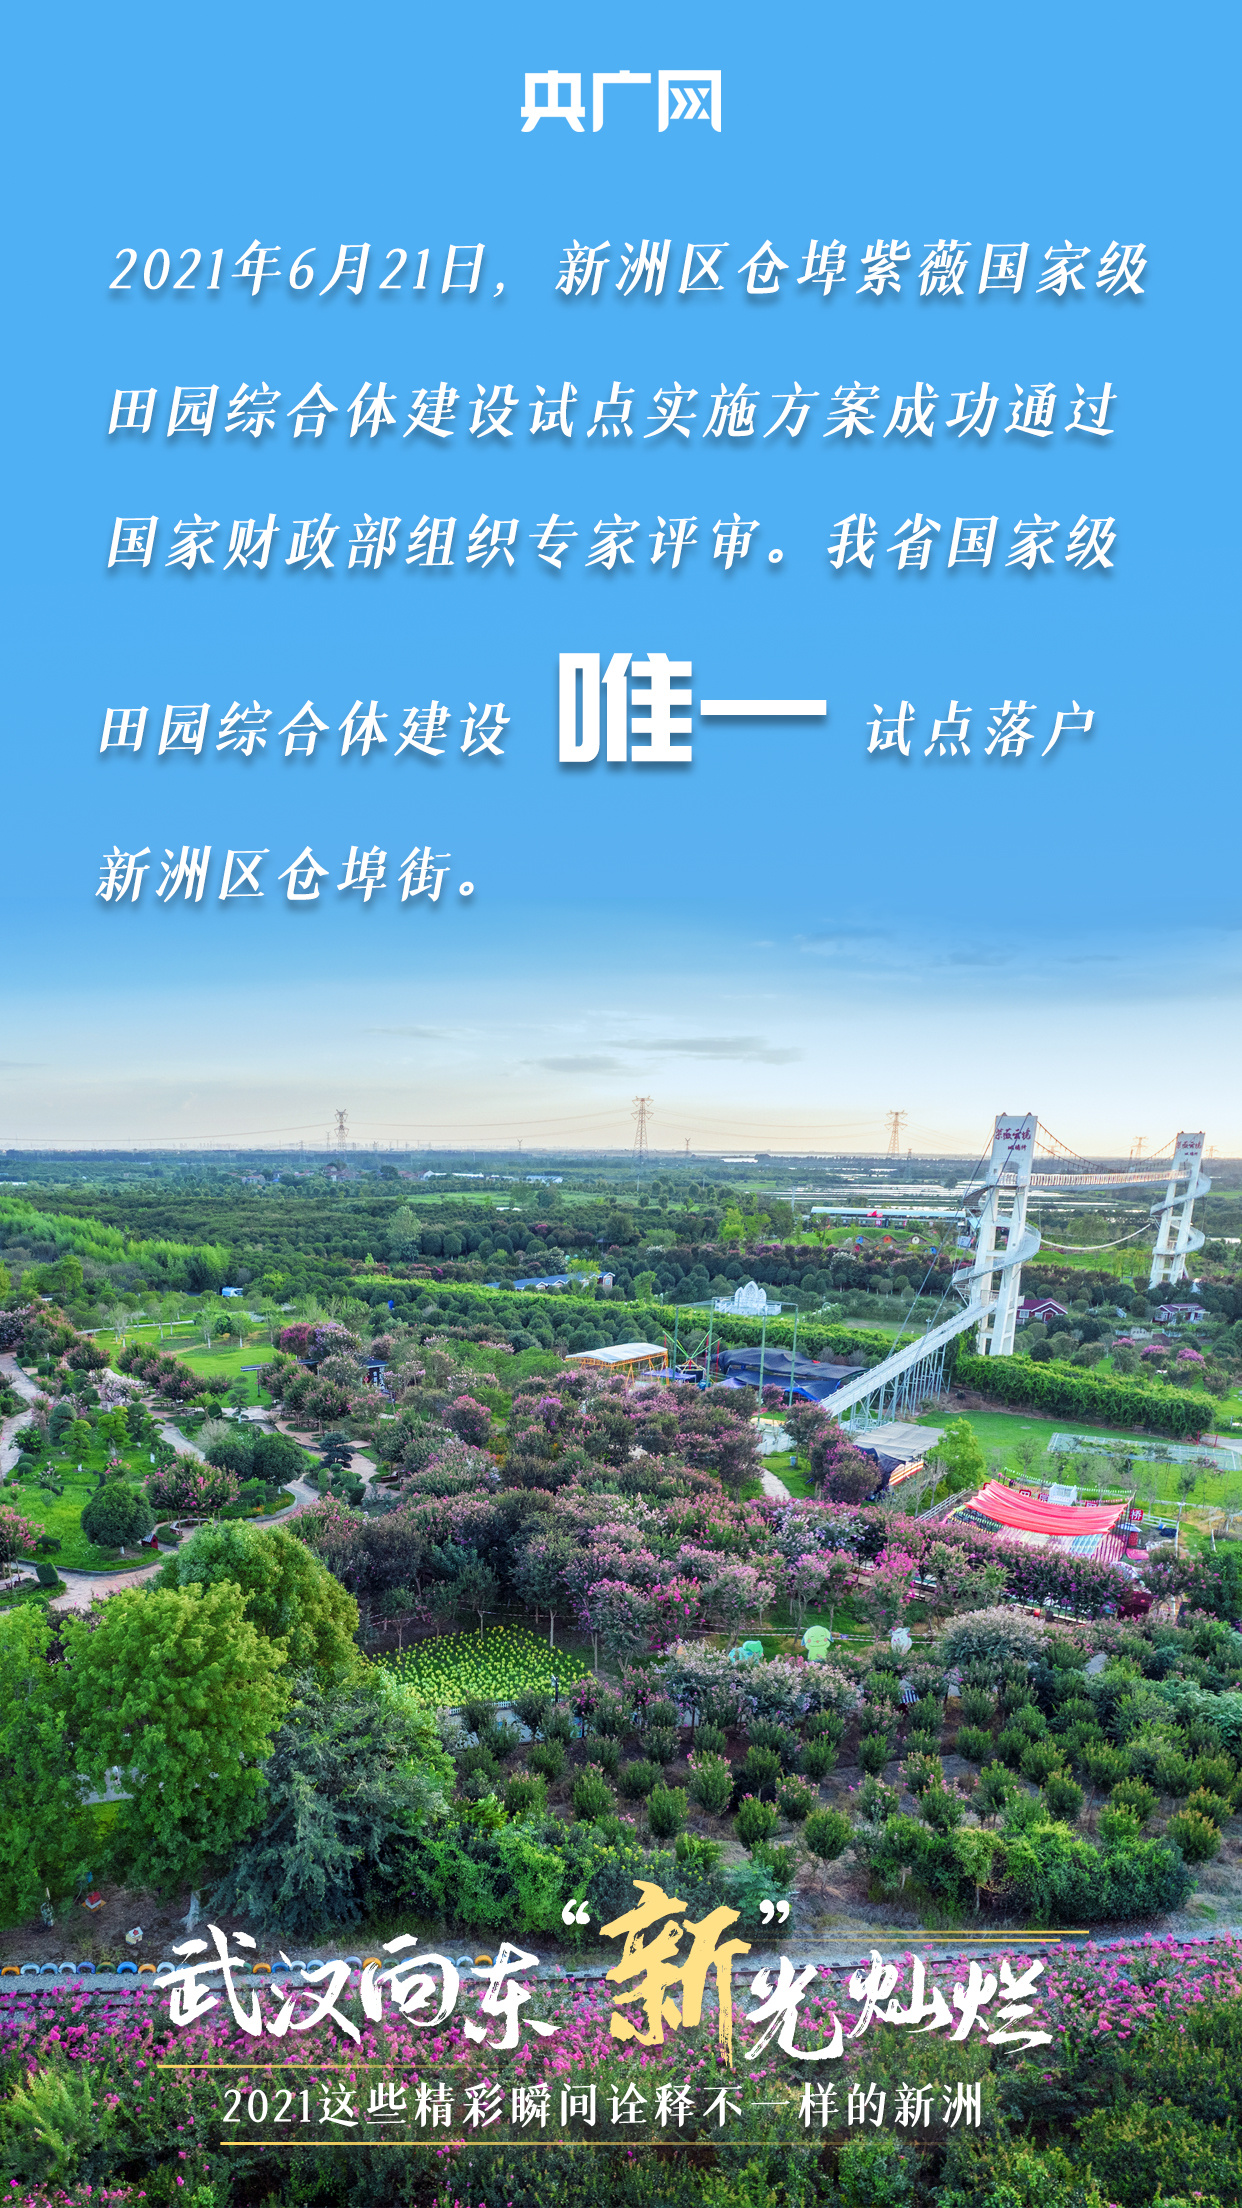 武汉向东 “新”光灿烂 2021这些精彩瞬间诠释不一样的新洲